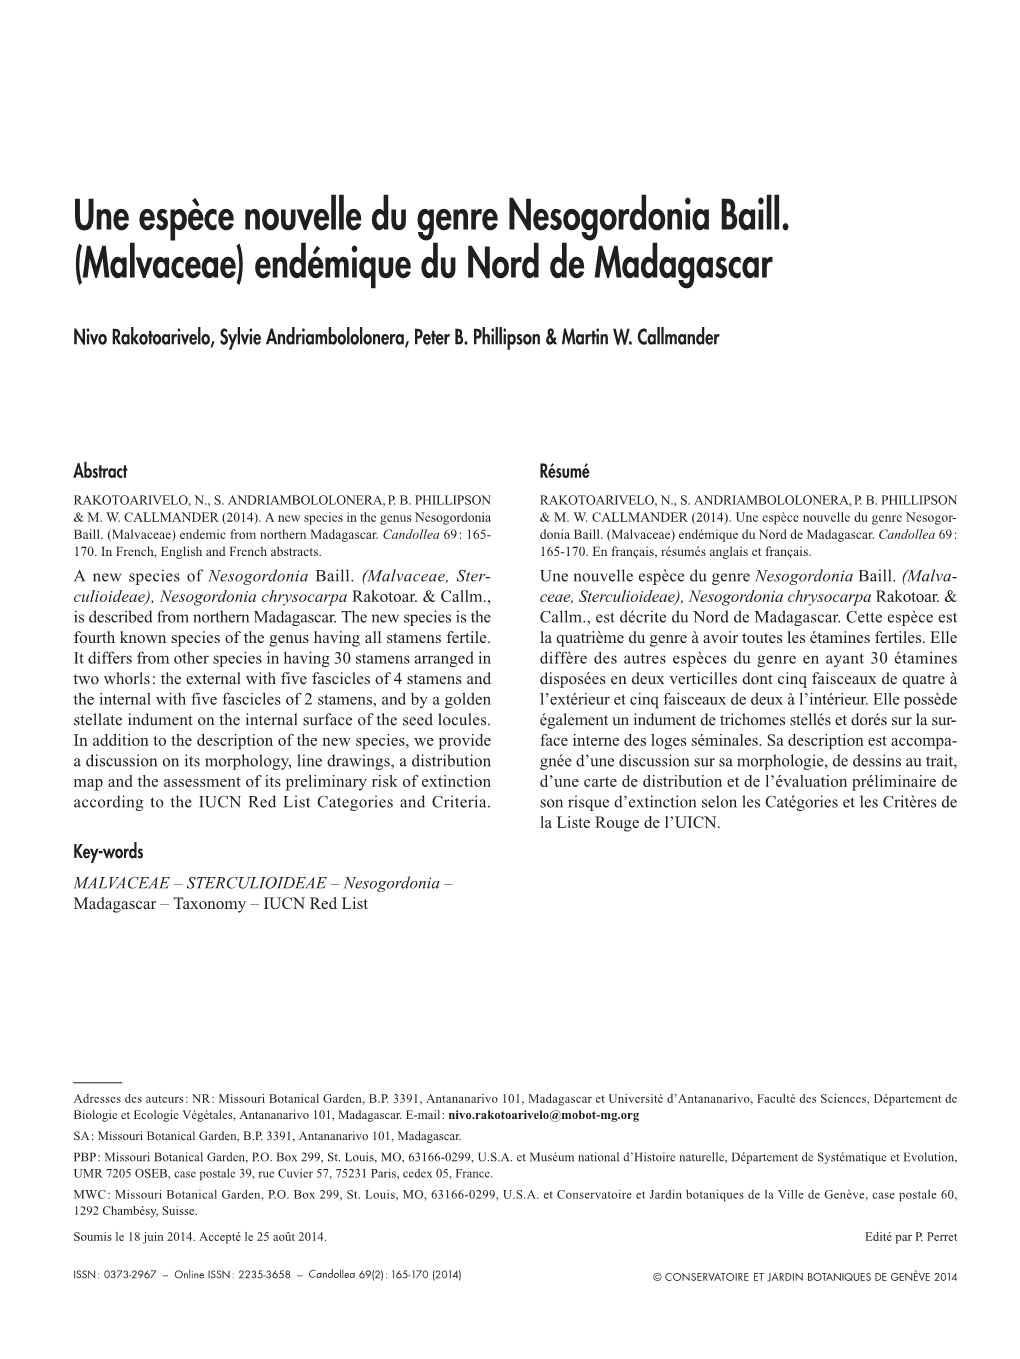 Une Espèce Nouvelle Du Genre Nesogordonia Baill. (Malvaceae) Endémique Du Nord De Madagascar